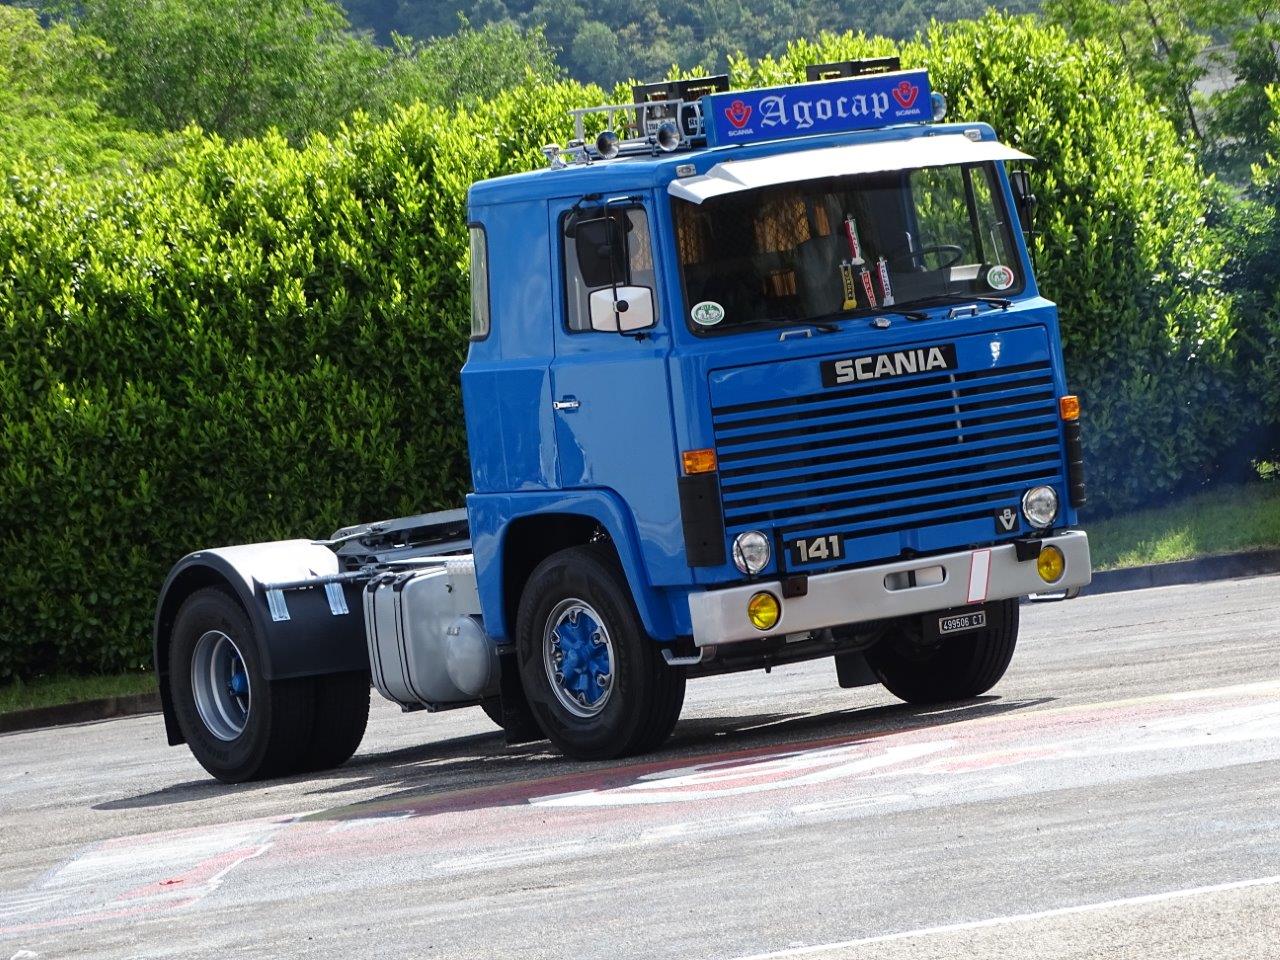 scania 141 mitico camion svedese anni 70 LB-141_2